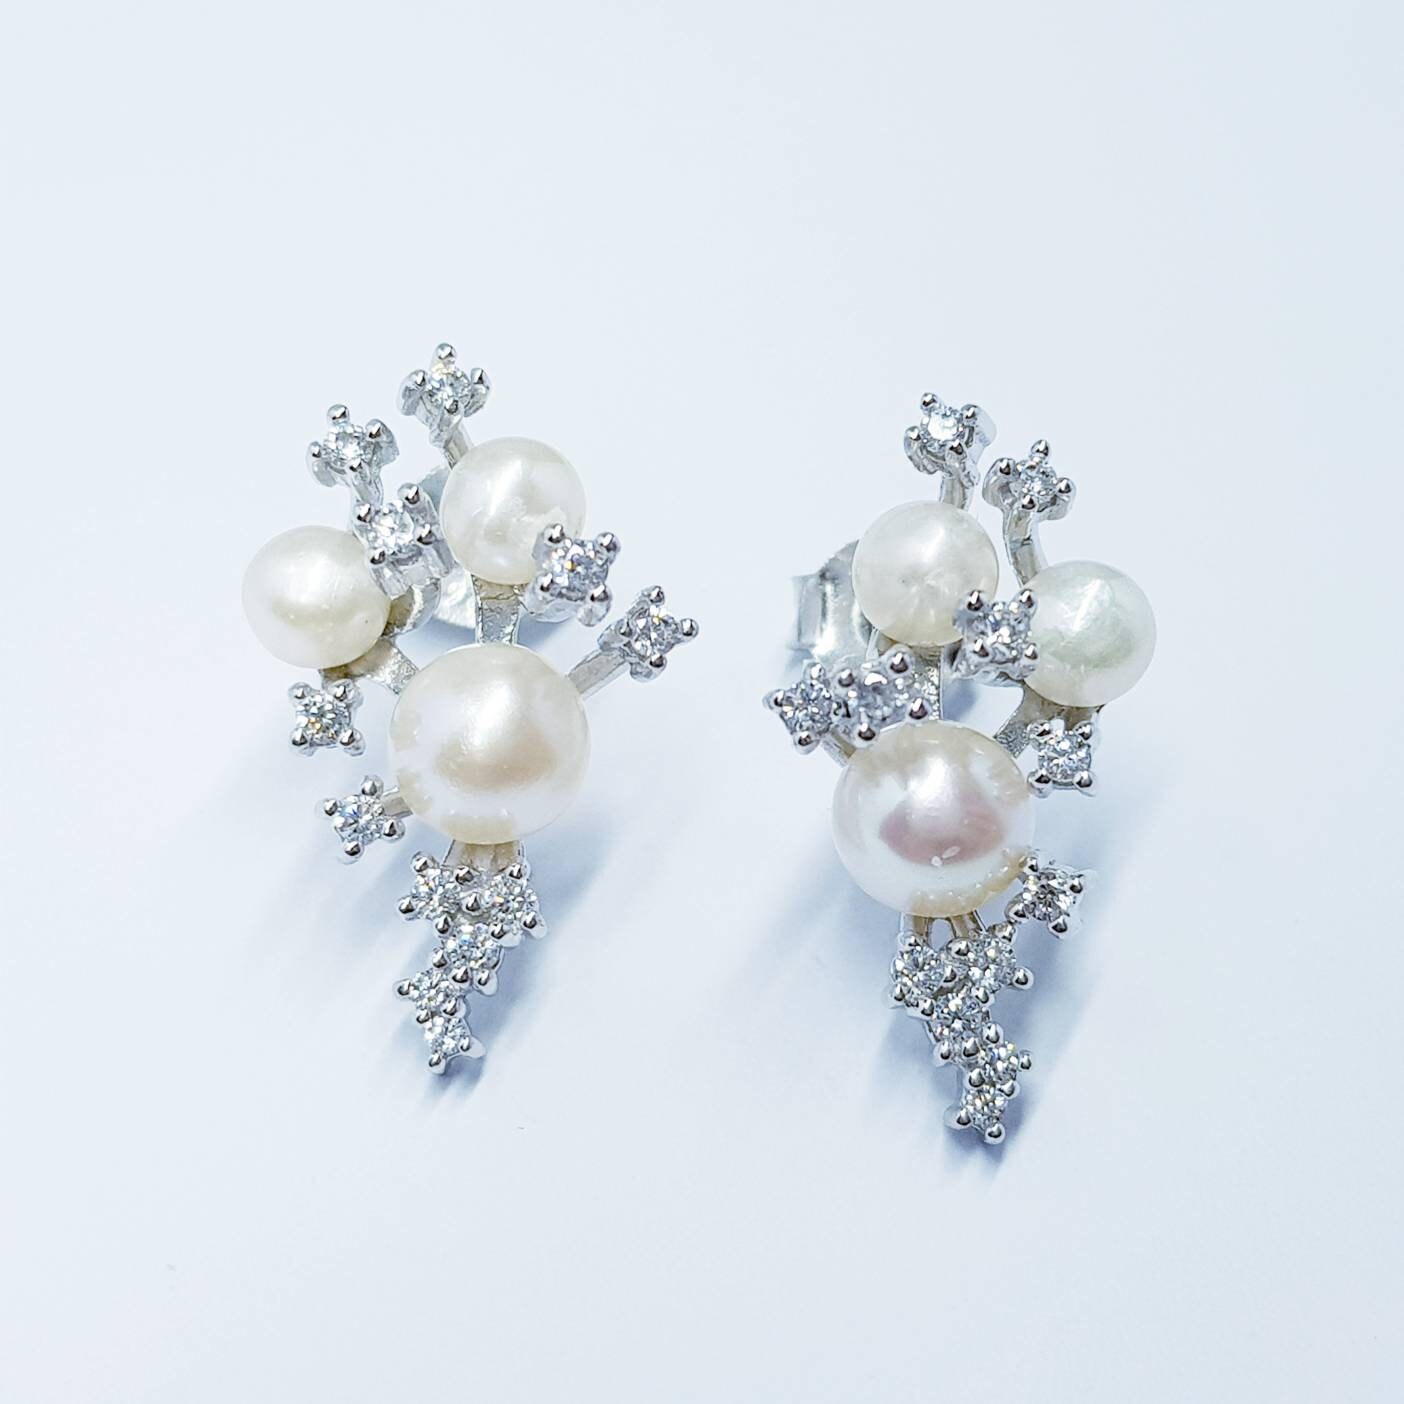 Pearl drop earrings, dress earrings, sterling silver pearl earrings, vintage earrings, bridal earrings, earrings for bridesmaids